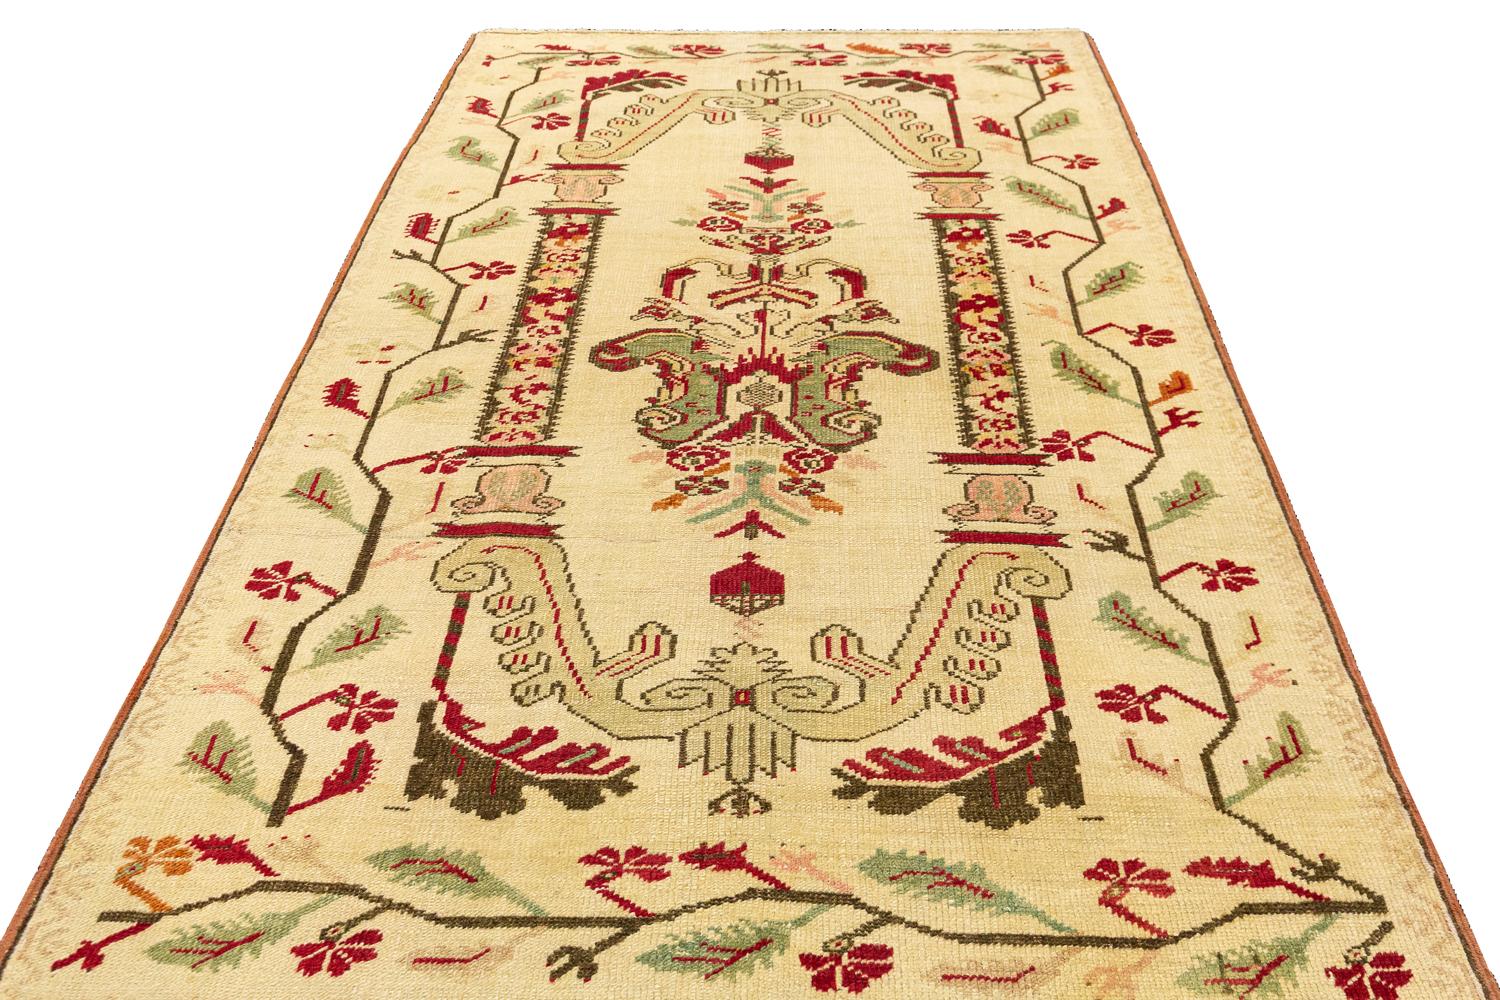 Ce tapis Ghiordes turc ancien est une véritable œuvre d'art. Le motif complexe, tissé à la main, date de plus de 100 ans et témoigne du talent et de l'habileté du tisserand de l'époque. La qualité de la laine garantit que ce tapis sera un élément